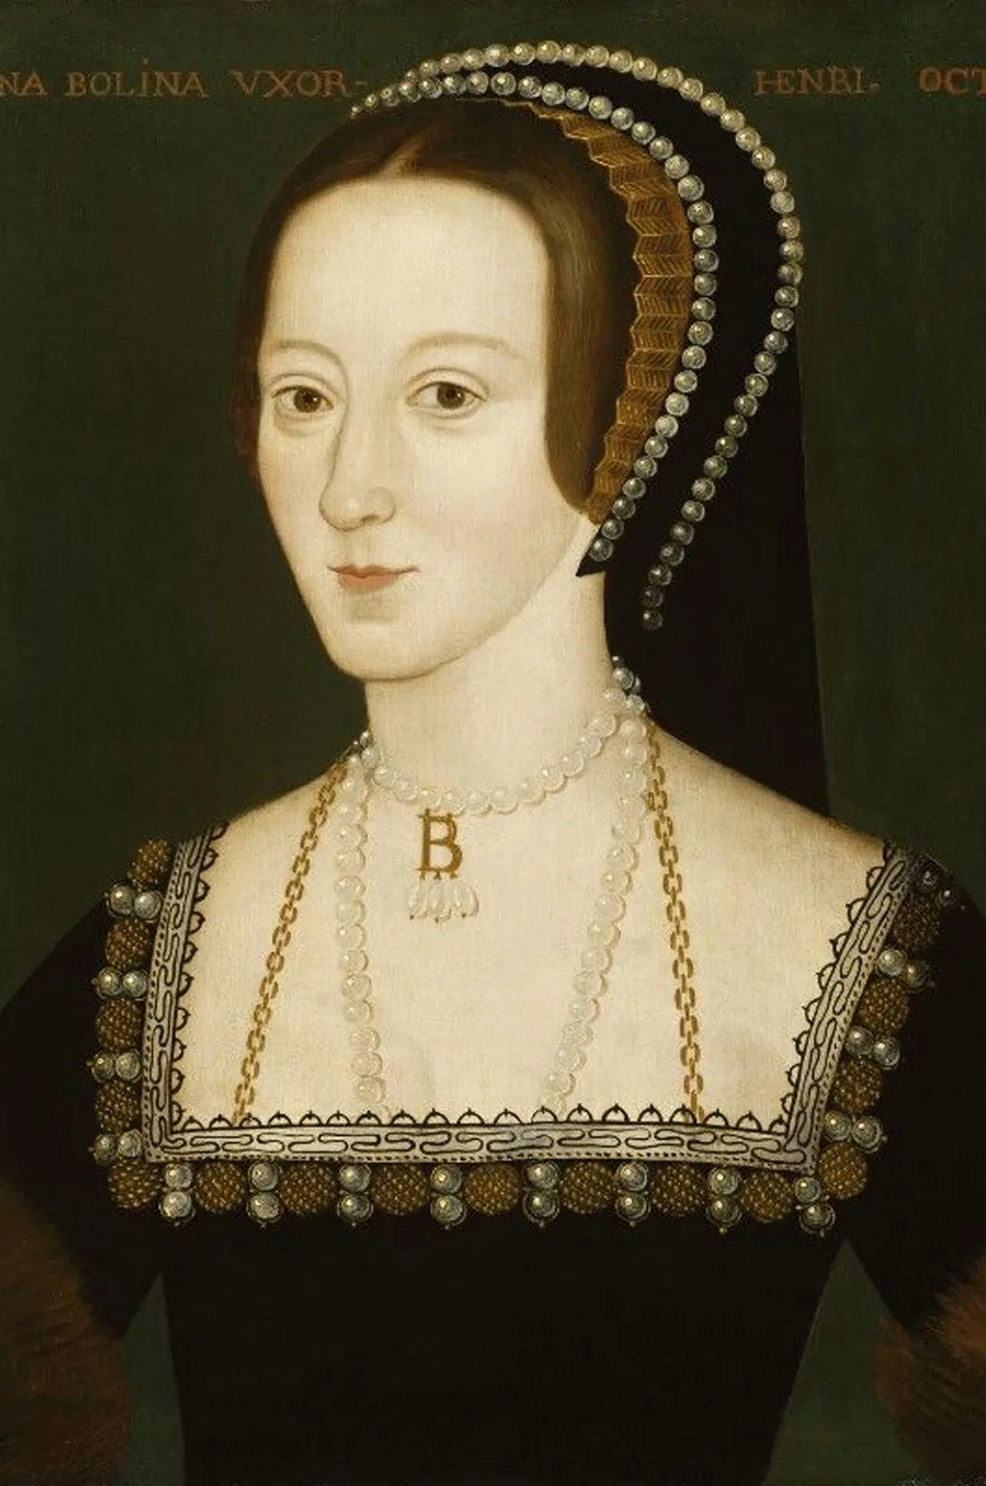 B ~ Anne Boleyn Necklace